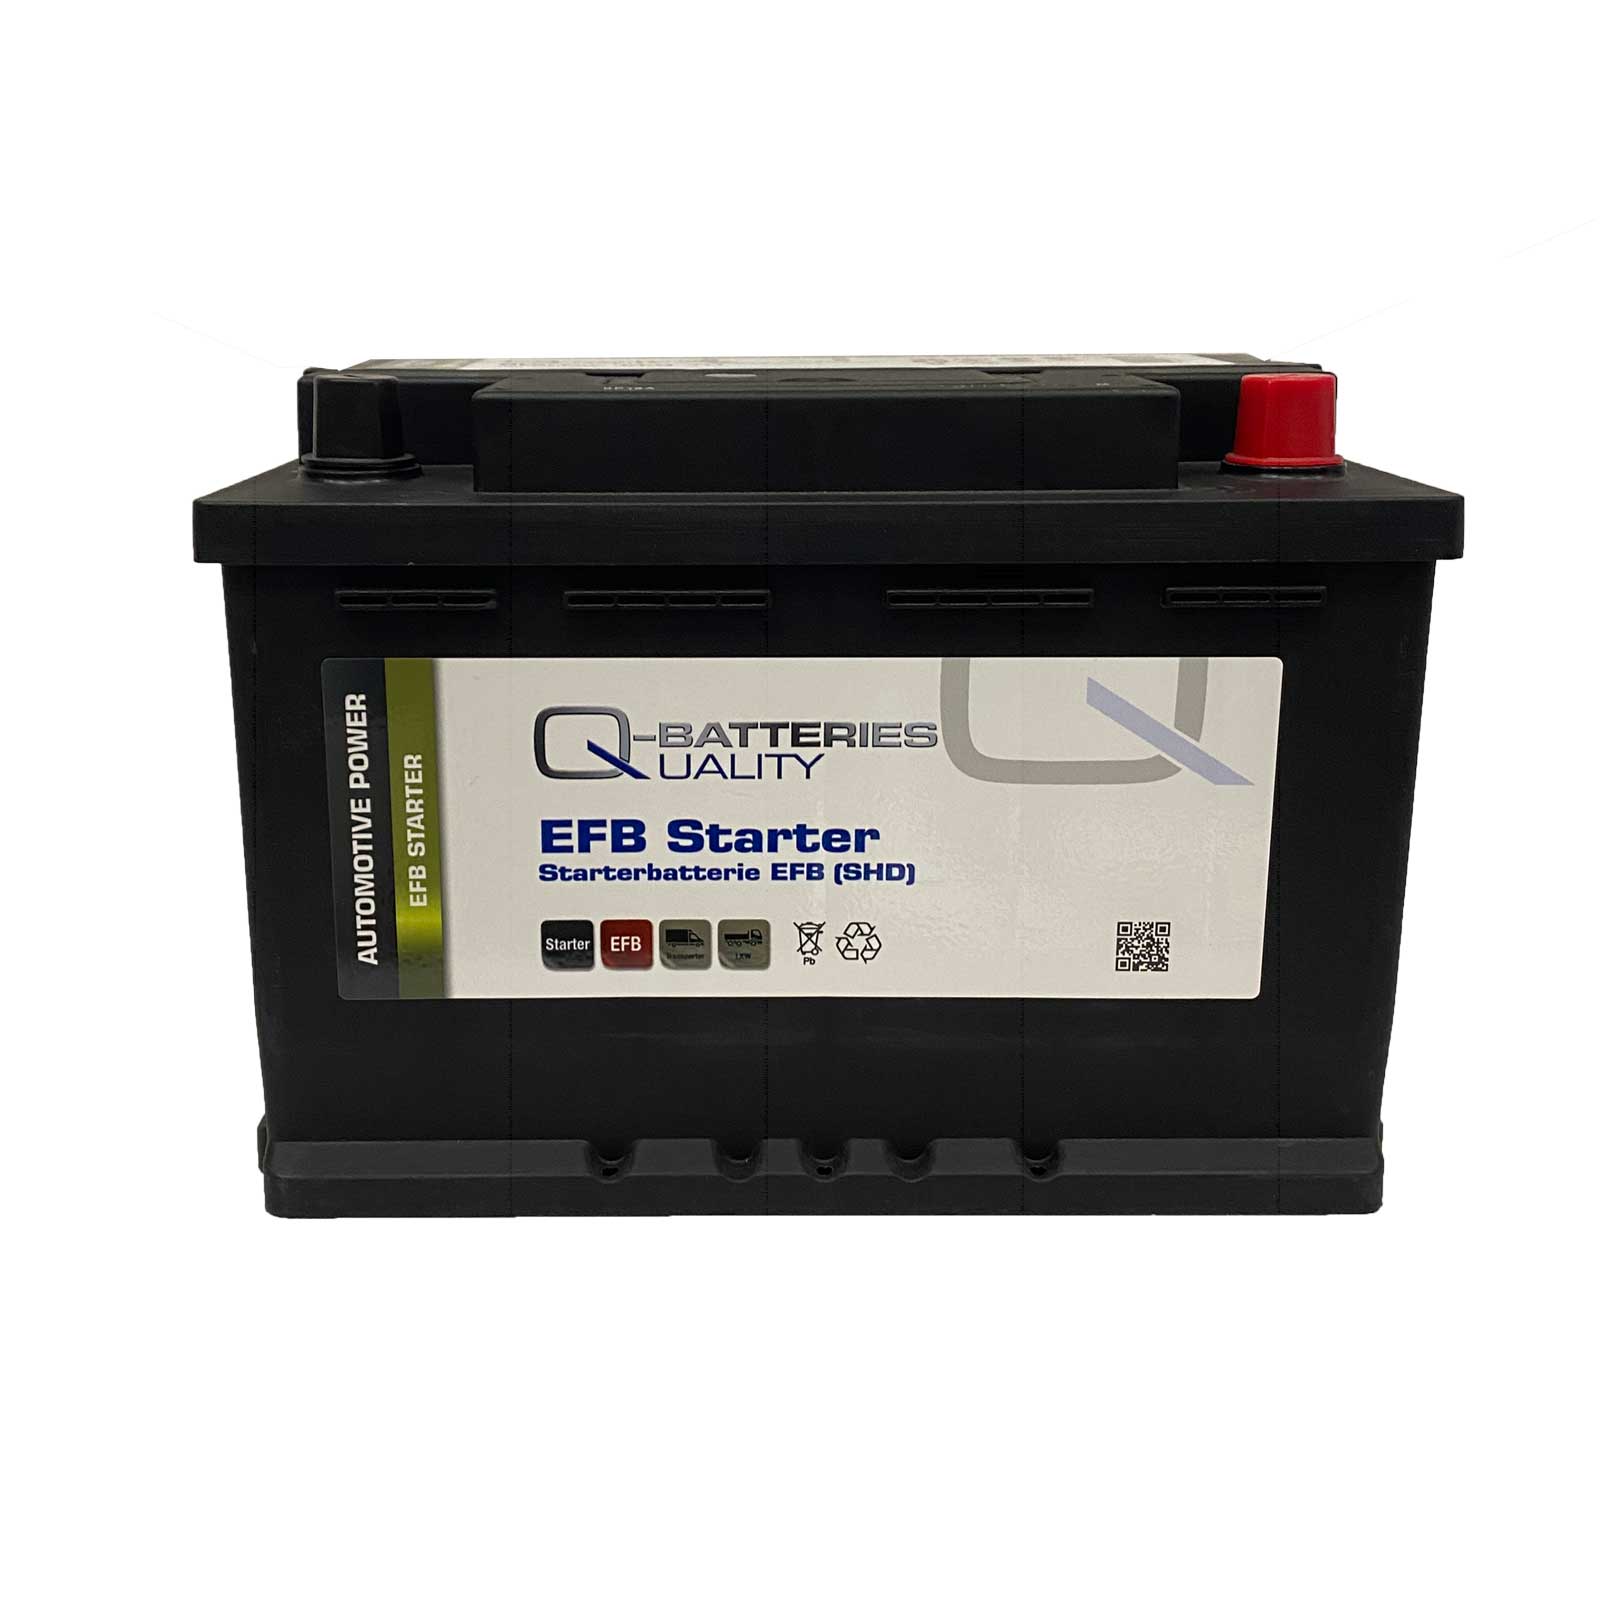 Q-Batteries Starter- und Versorgungsbatterien AGM